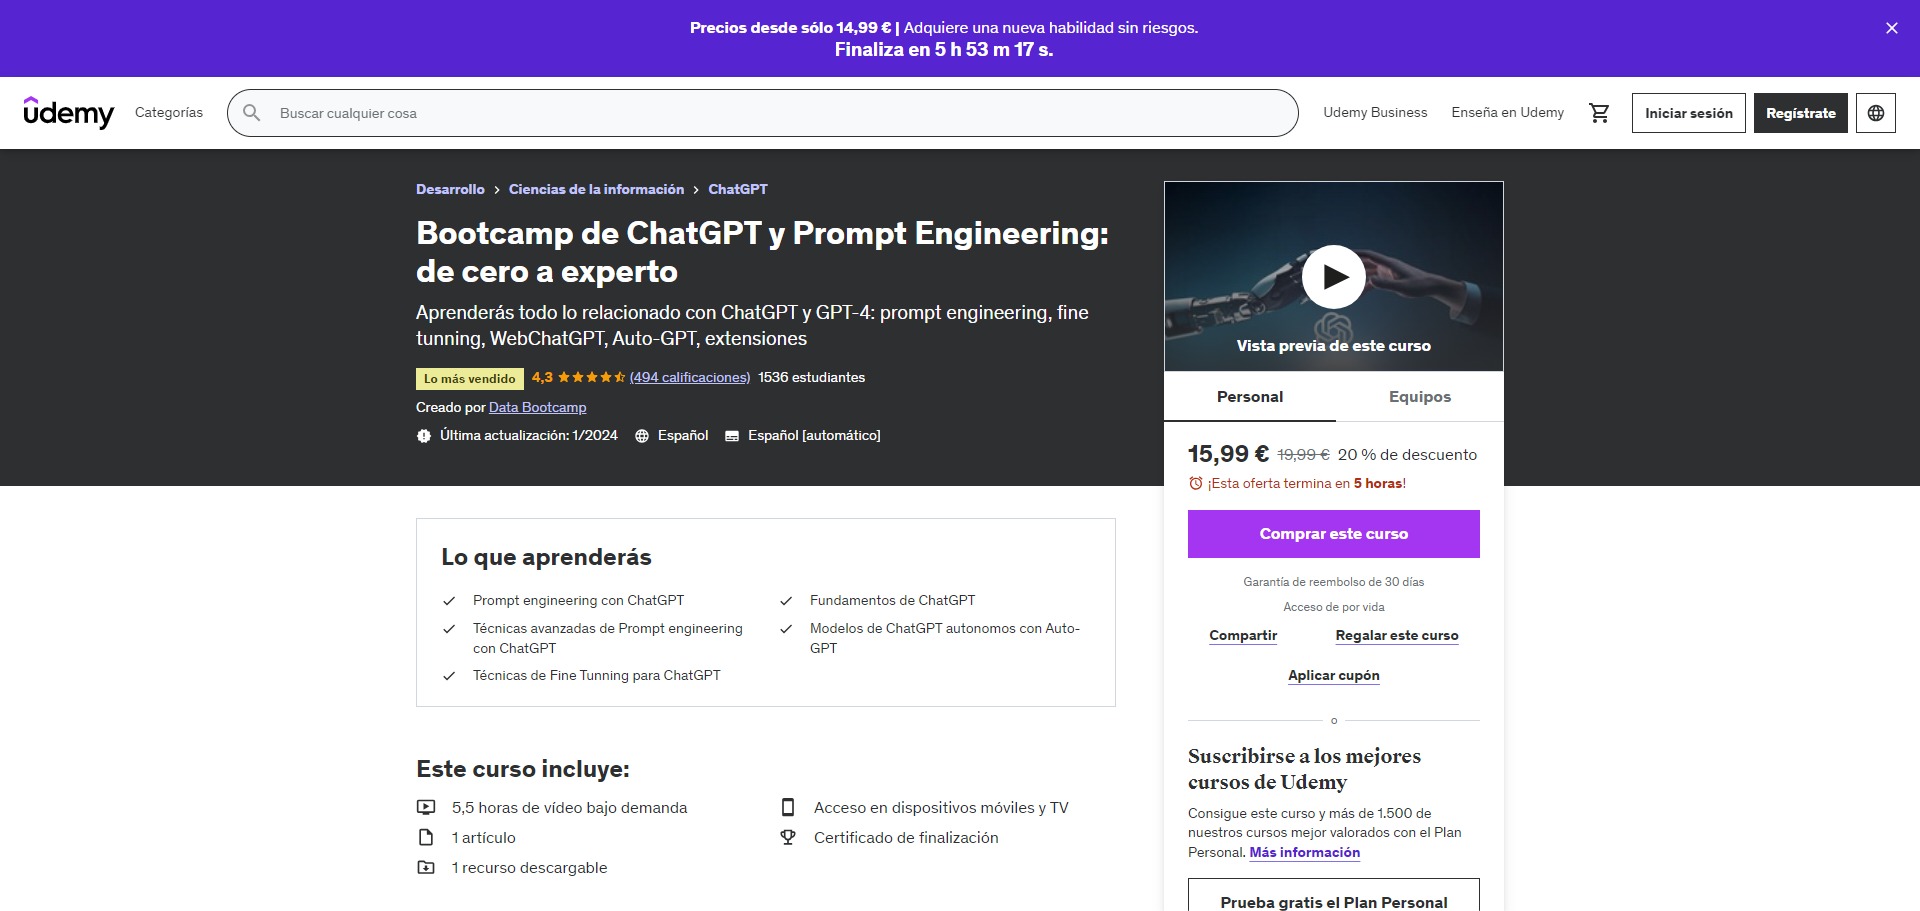 DesarrolloCiencias de la informaciónChatGPTBootcamp de ChatGPT y Prompt Engineering: de cero a experto